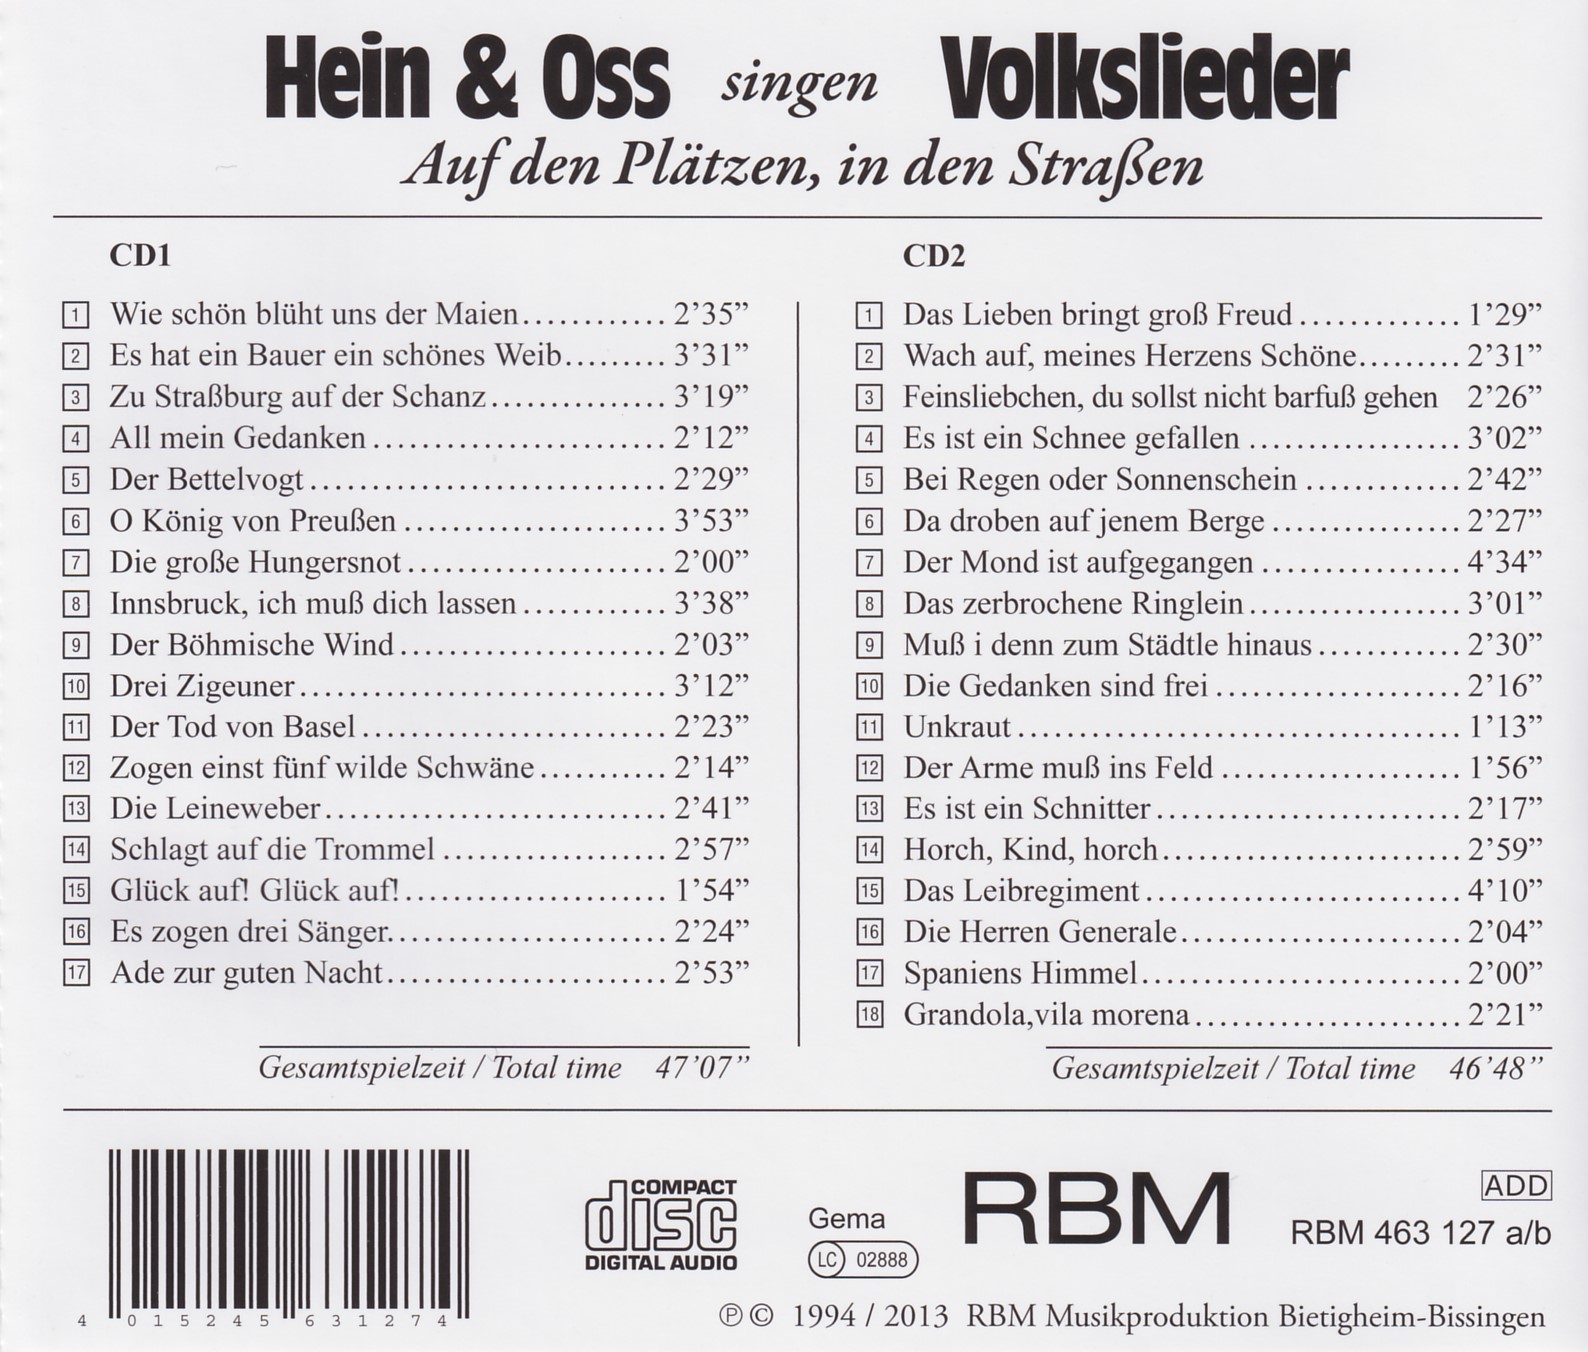 Hein & Oss singen Volkslieder - Auf den Plätzen, in den Straßen